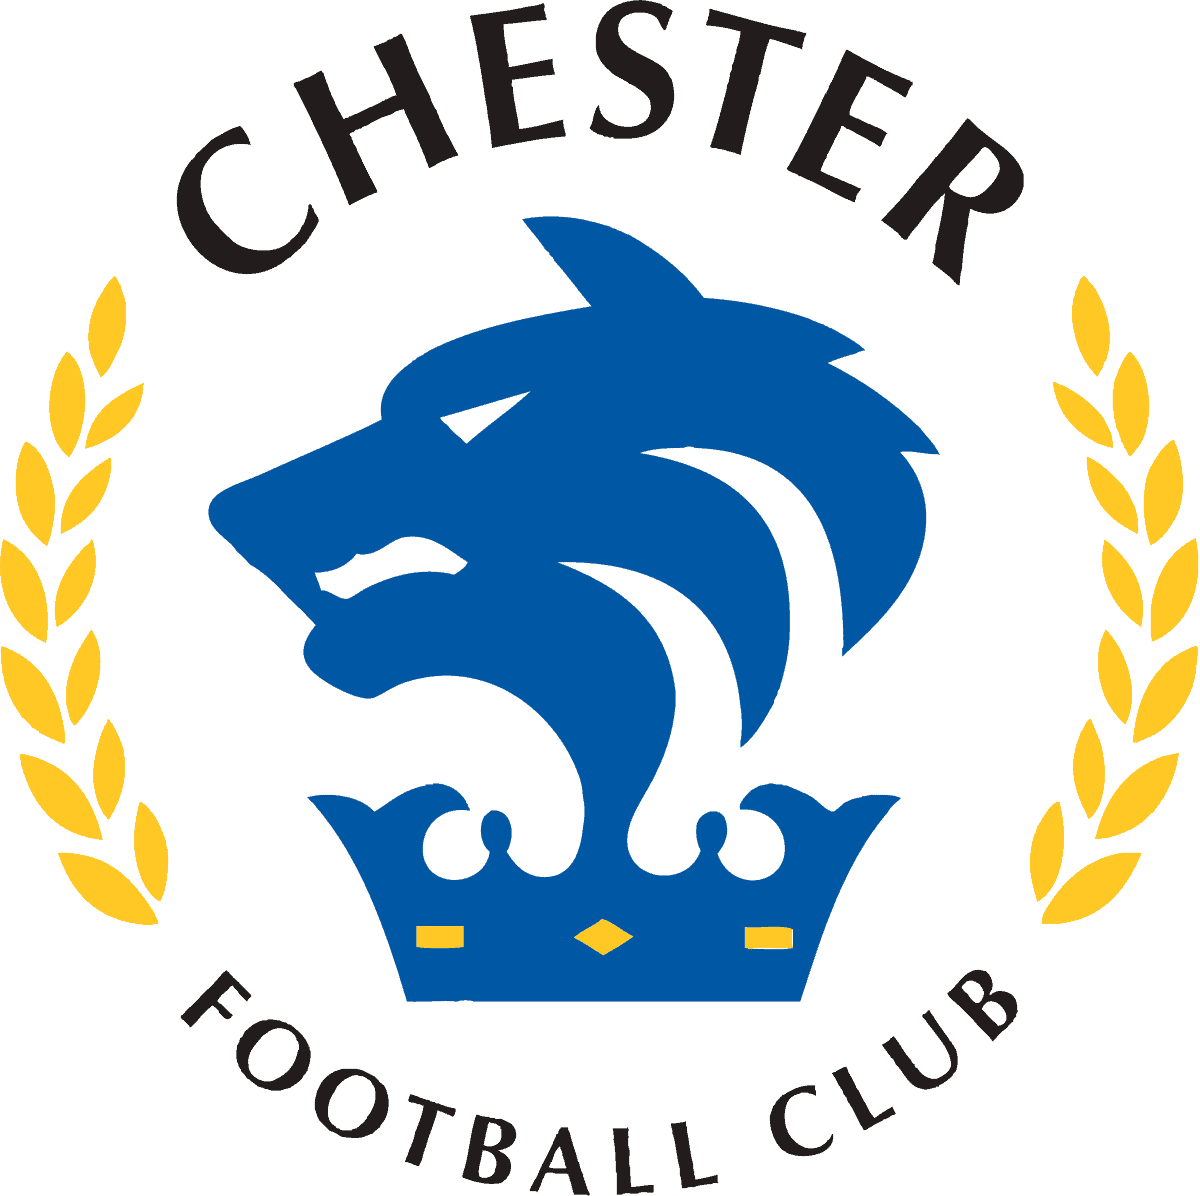 Chester FC Logo